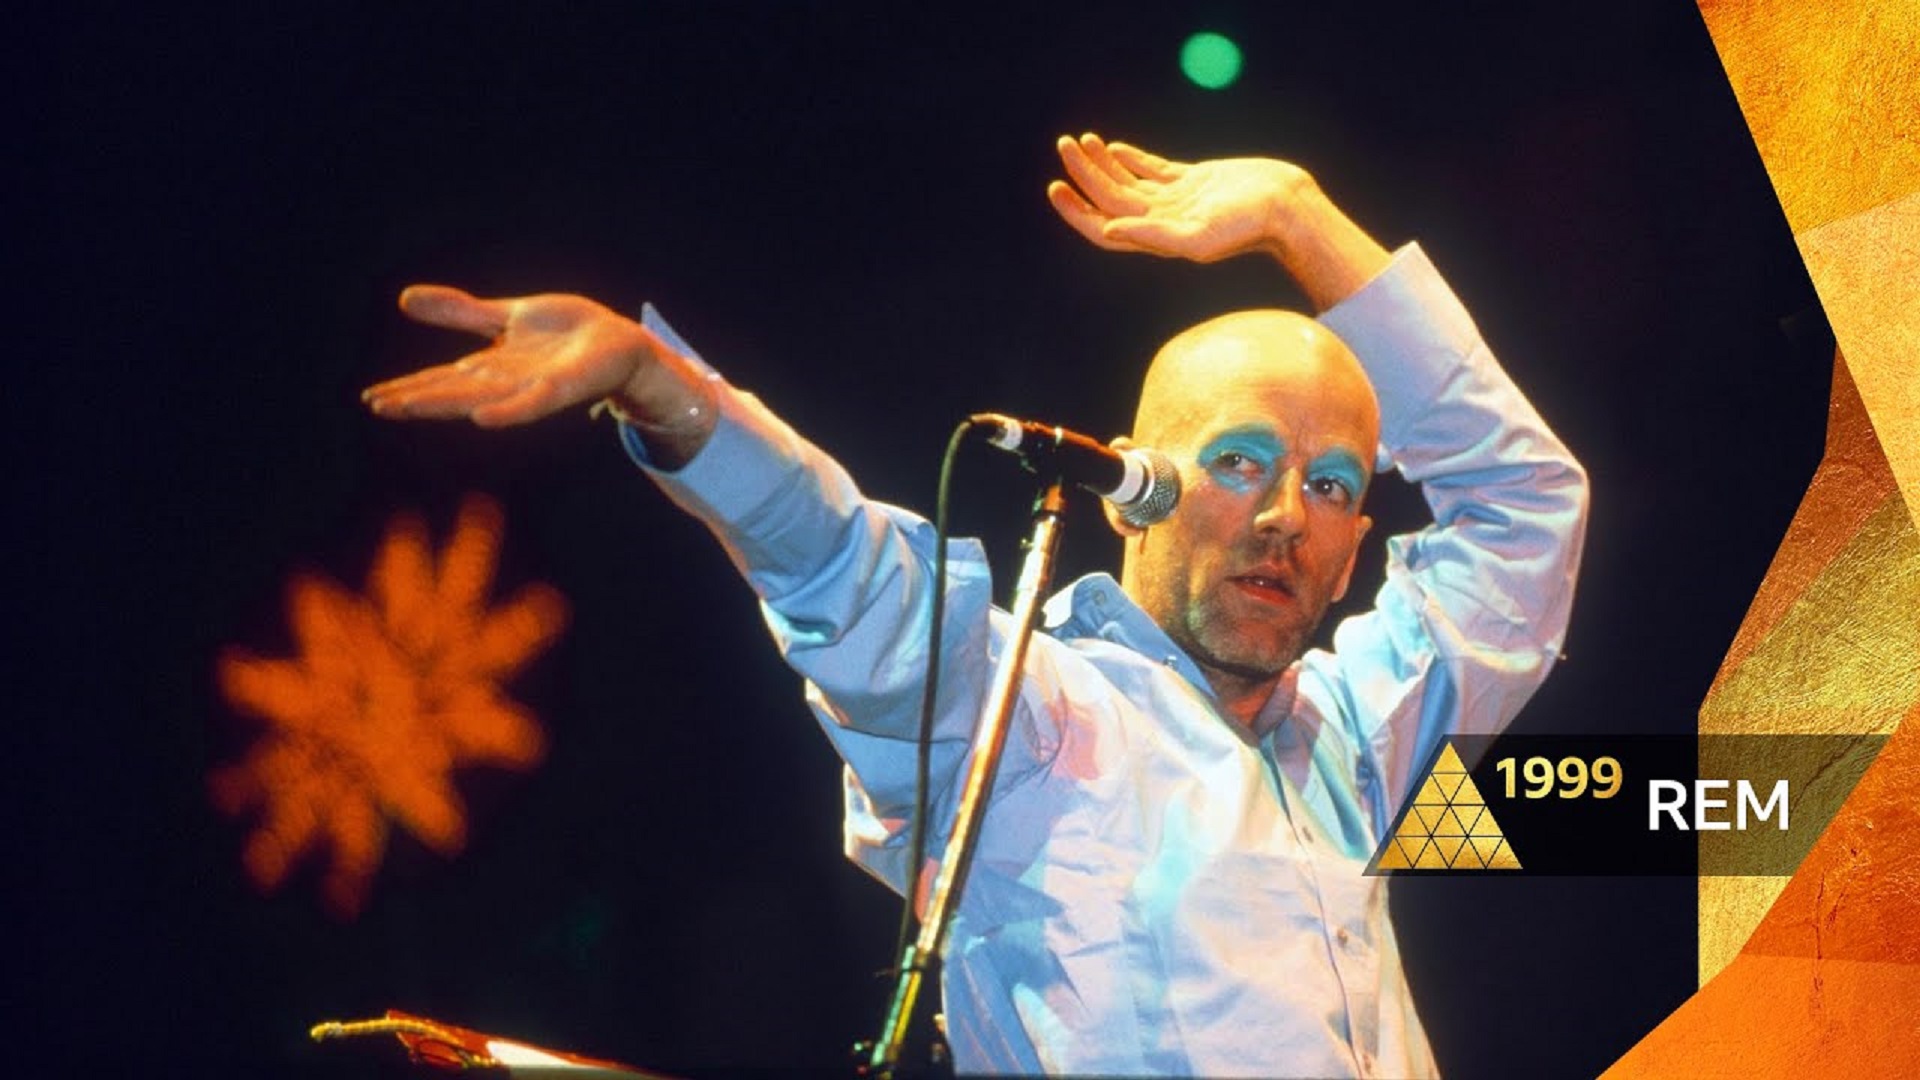 R.E.M. retransmitirá su mítico concierto en Glastonbury de 1999